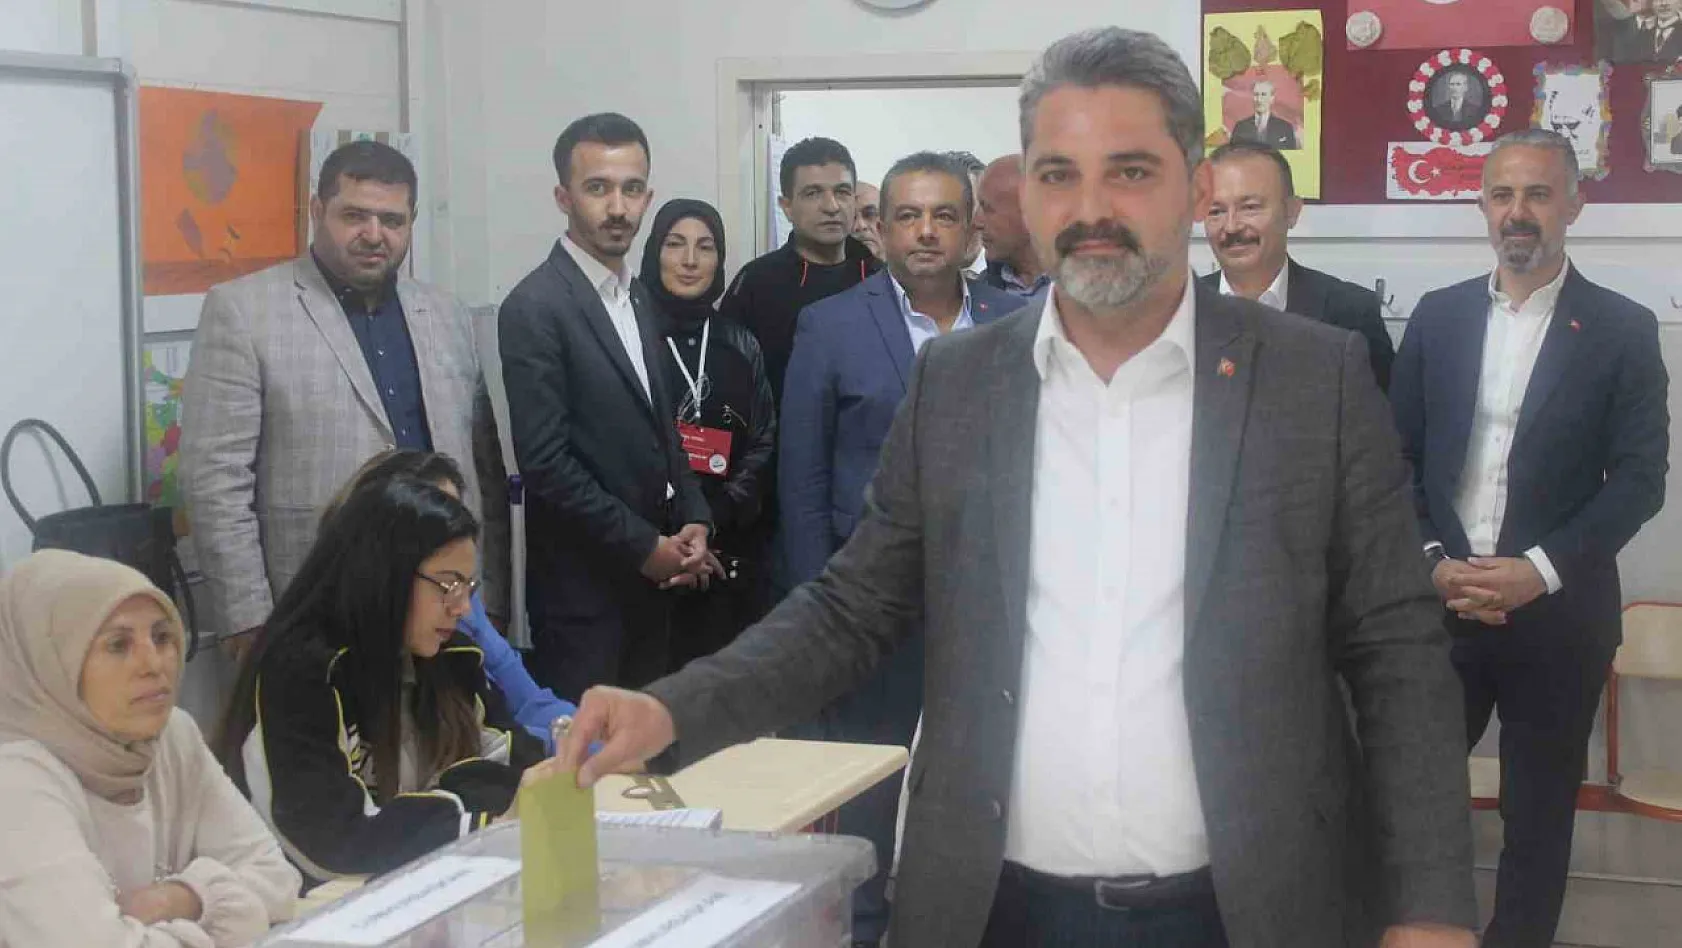 AK Parti İl Başkanı Üzüm: 'Seçmenin vicdanına güveniyoruz'